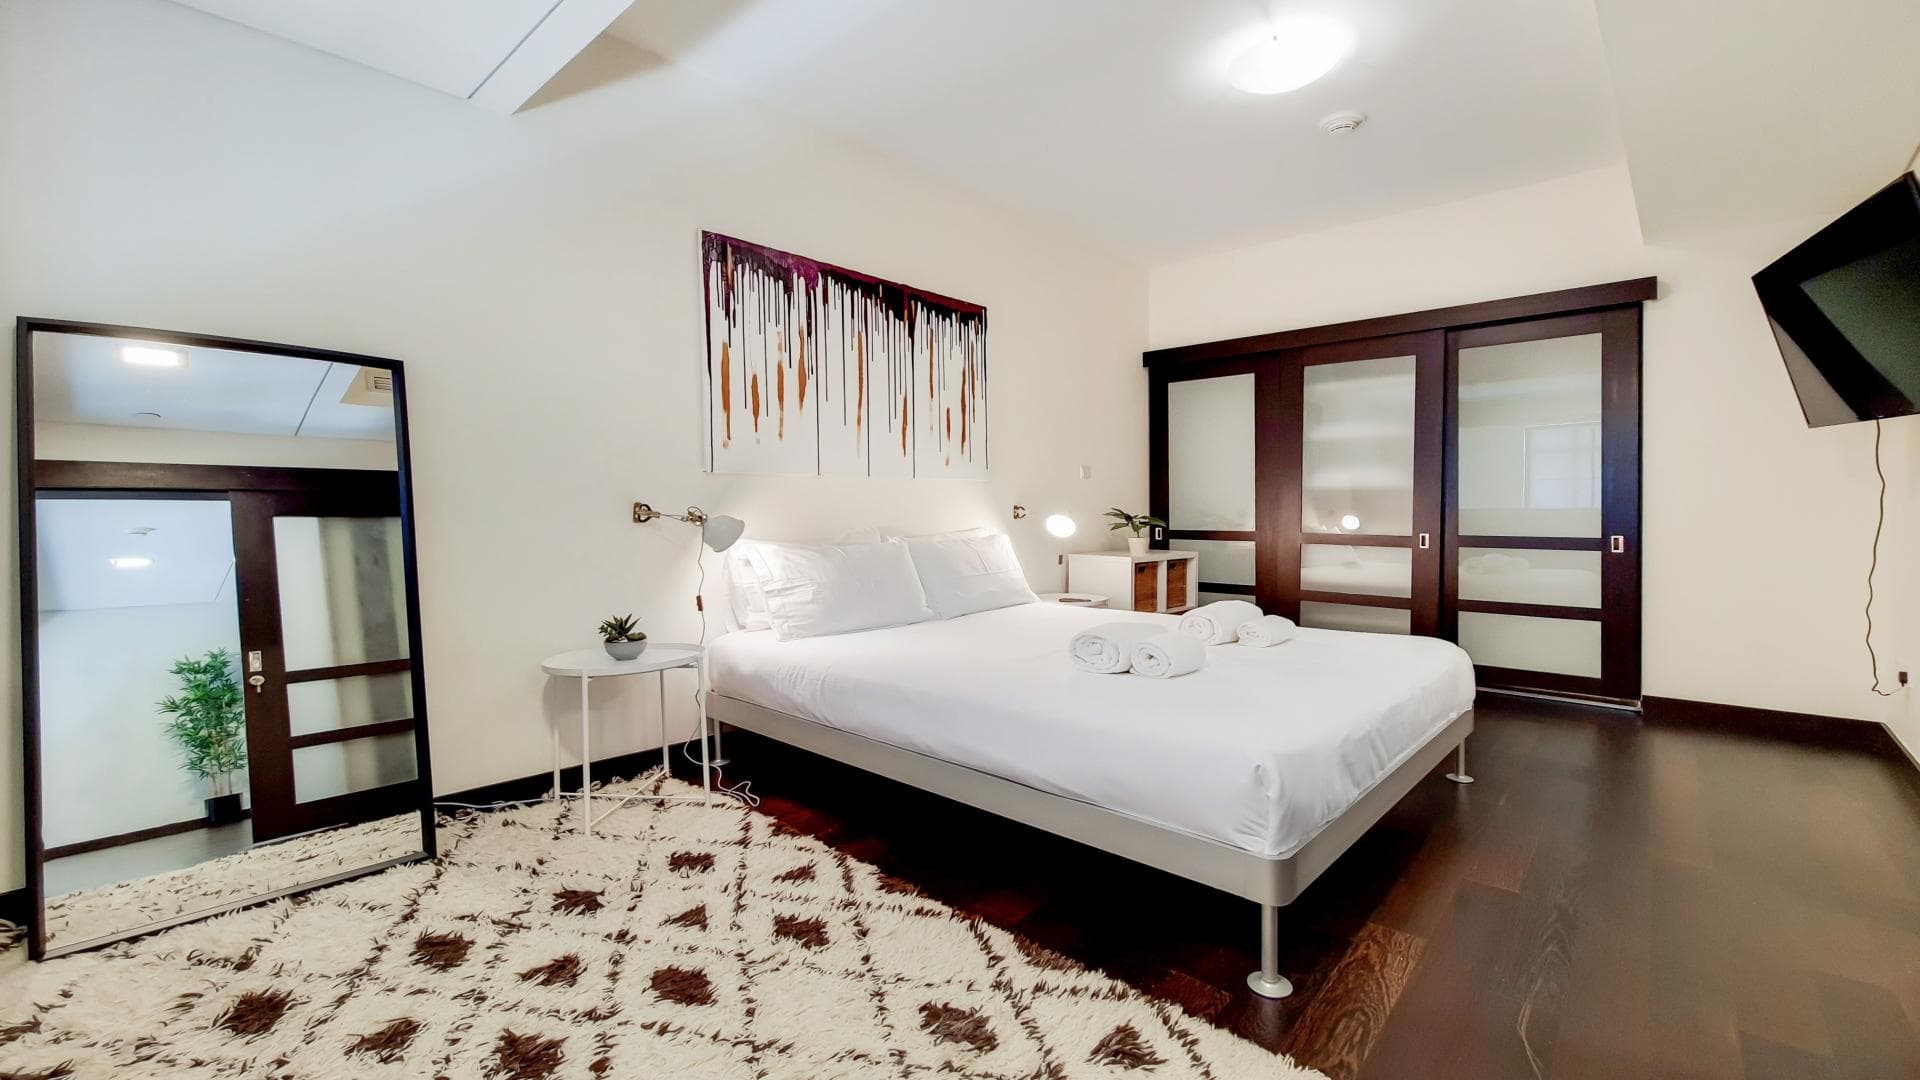 3 Bedroom Apartment For Rent Family Villas Lp36549 2dd7a1b8cf755a00.jpg